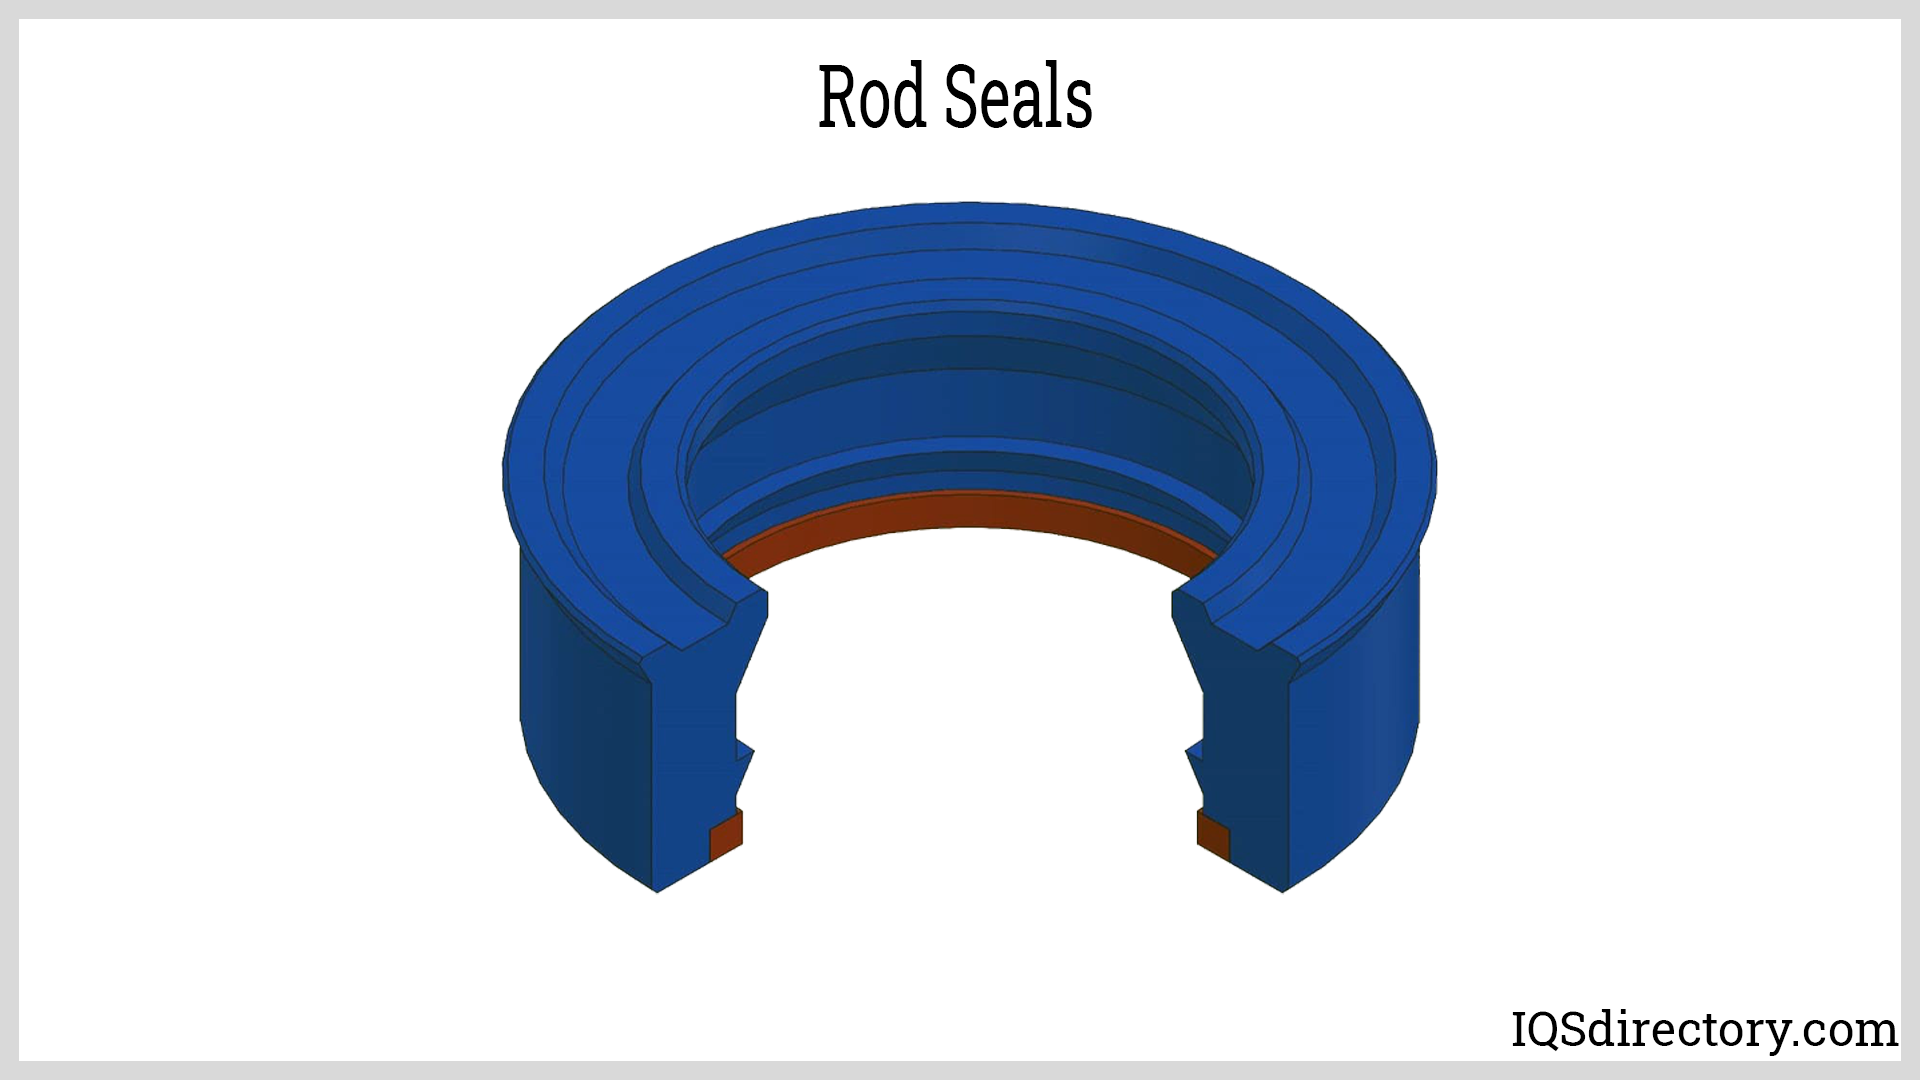 Rod Seals